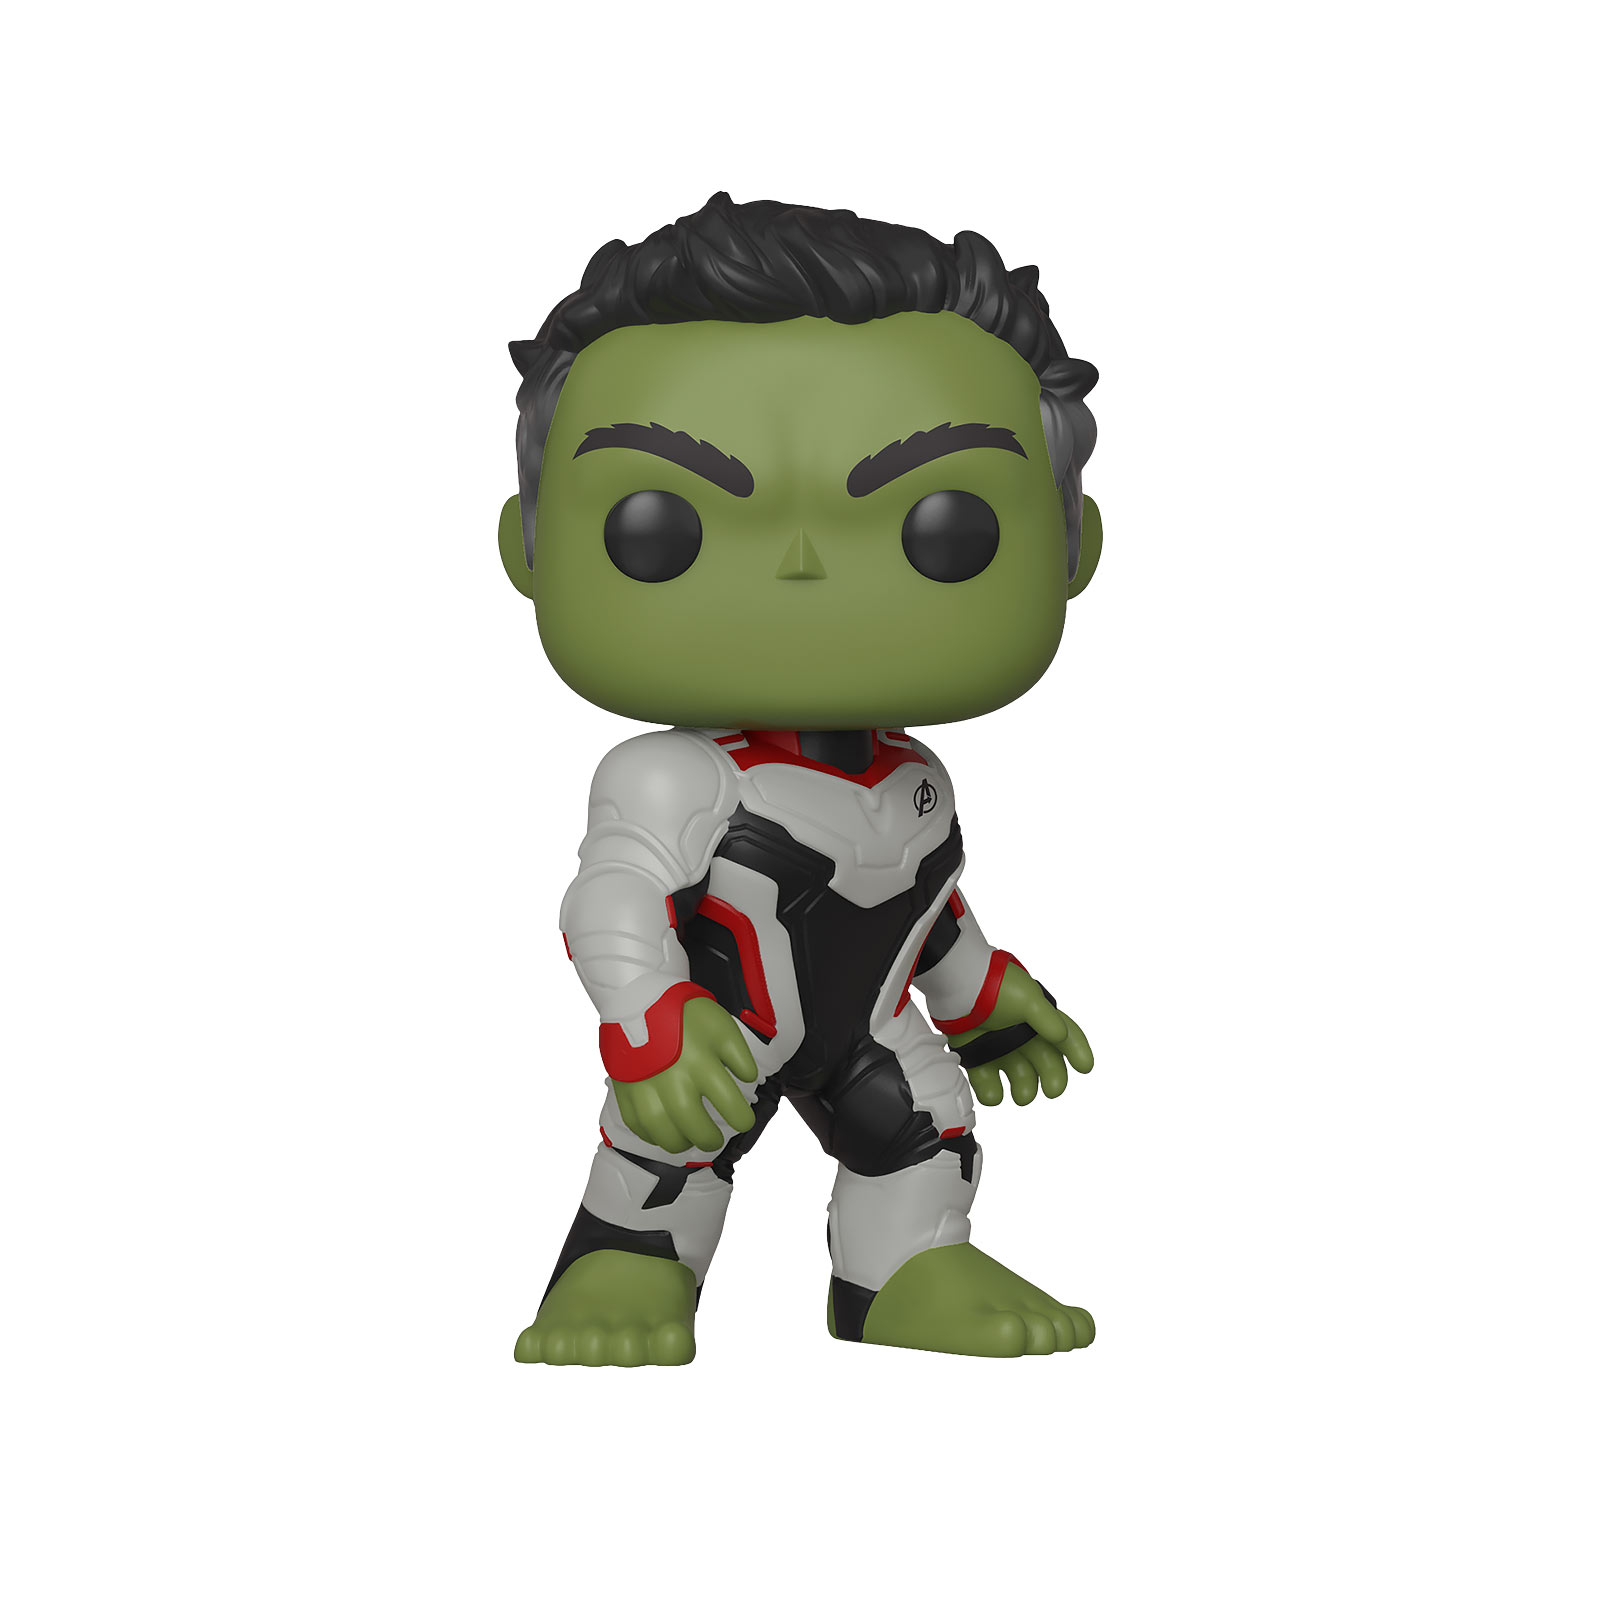 Avengers - Hulk Endgame Funko Pop bobblehead figure